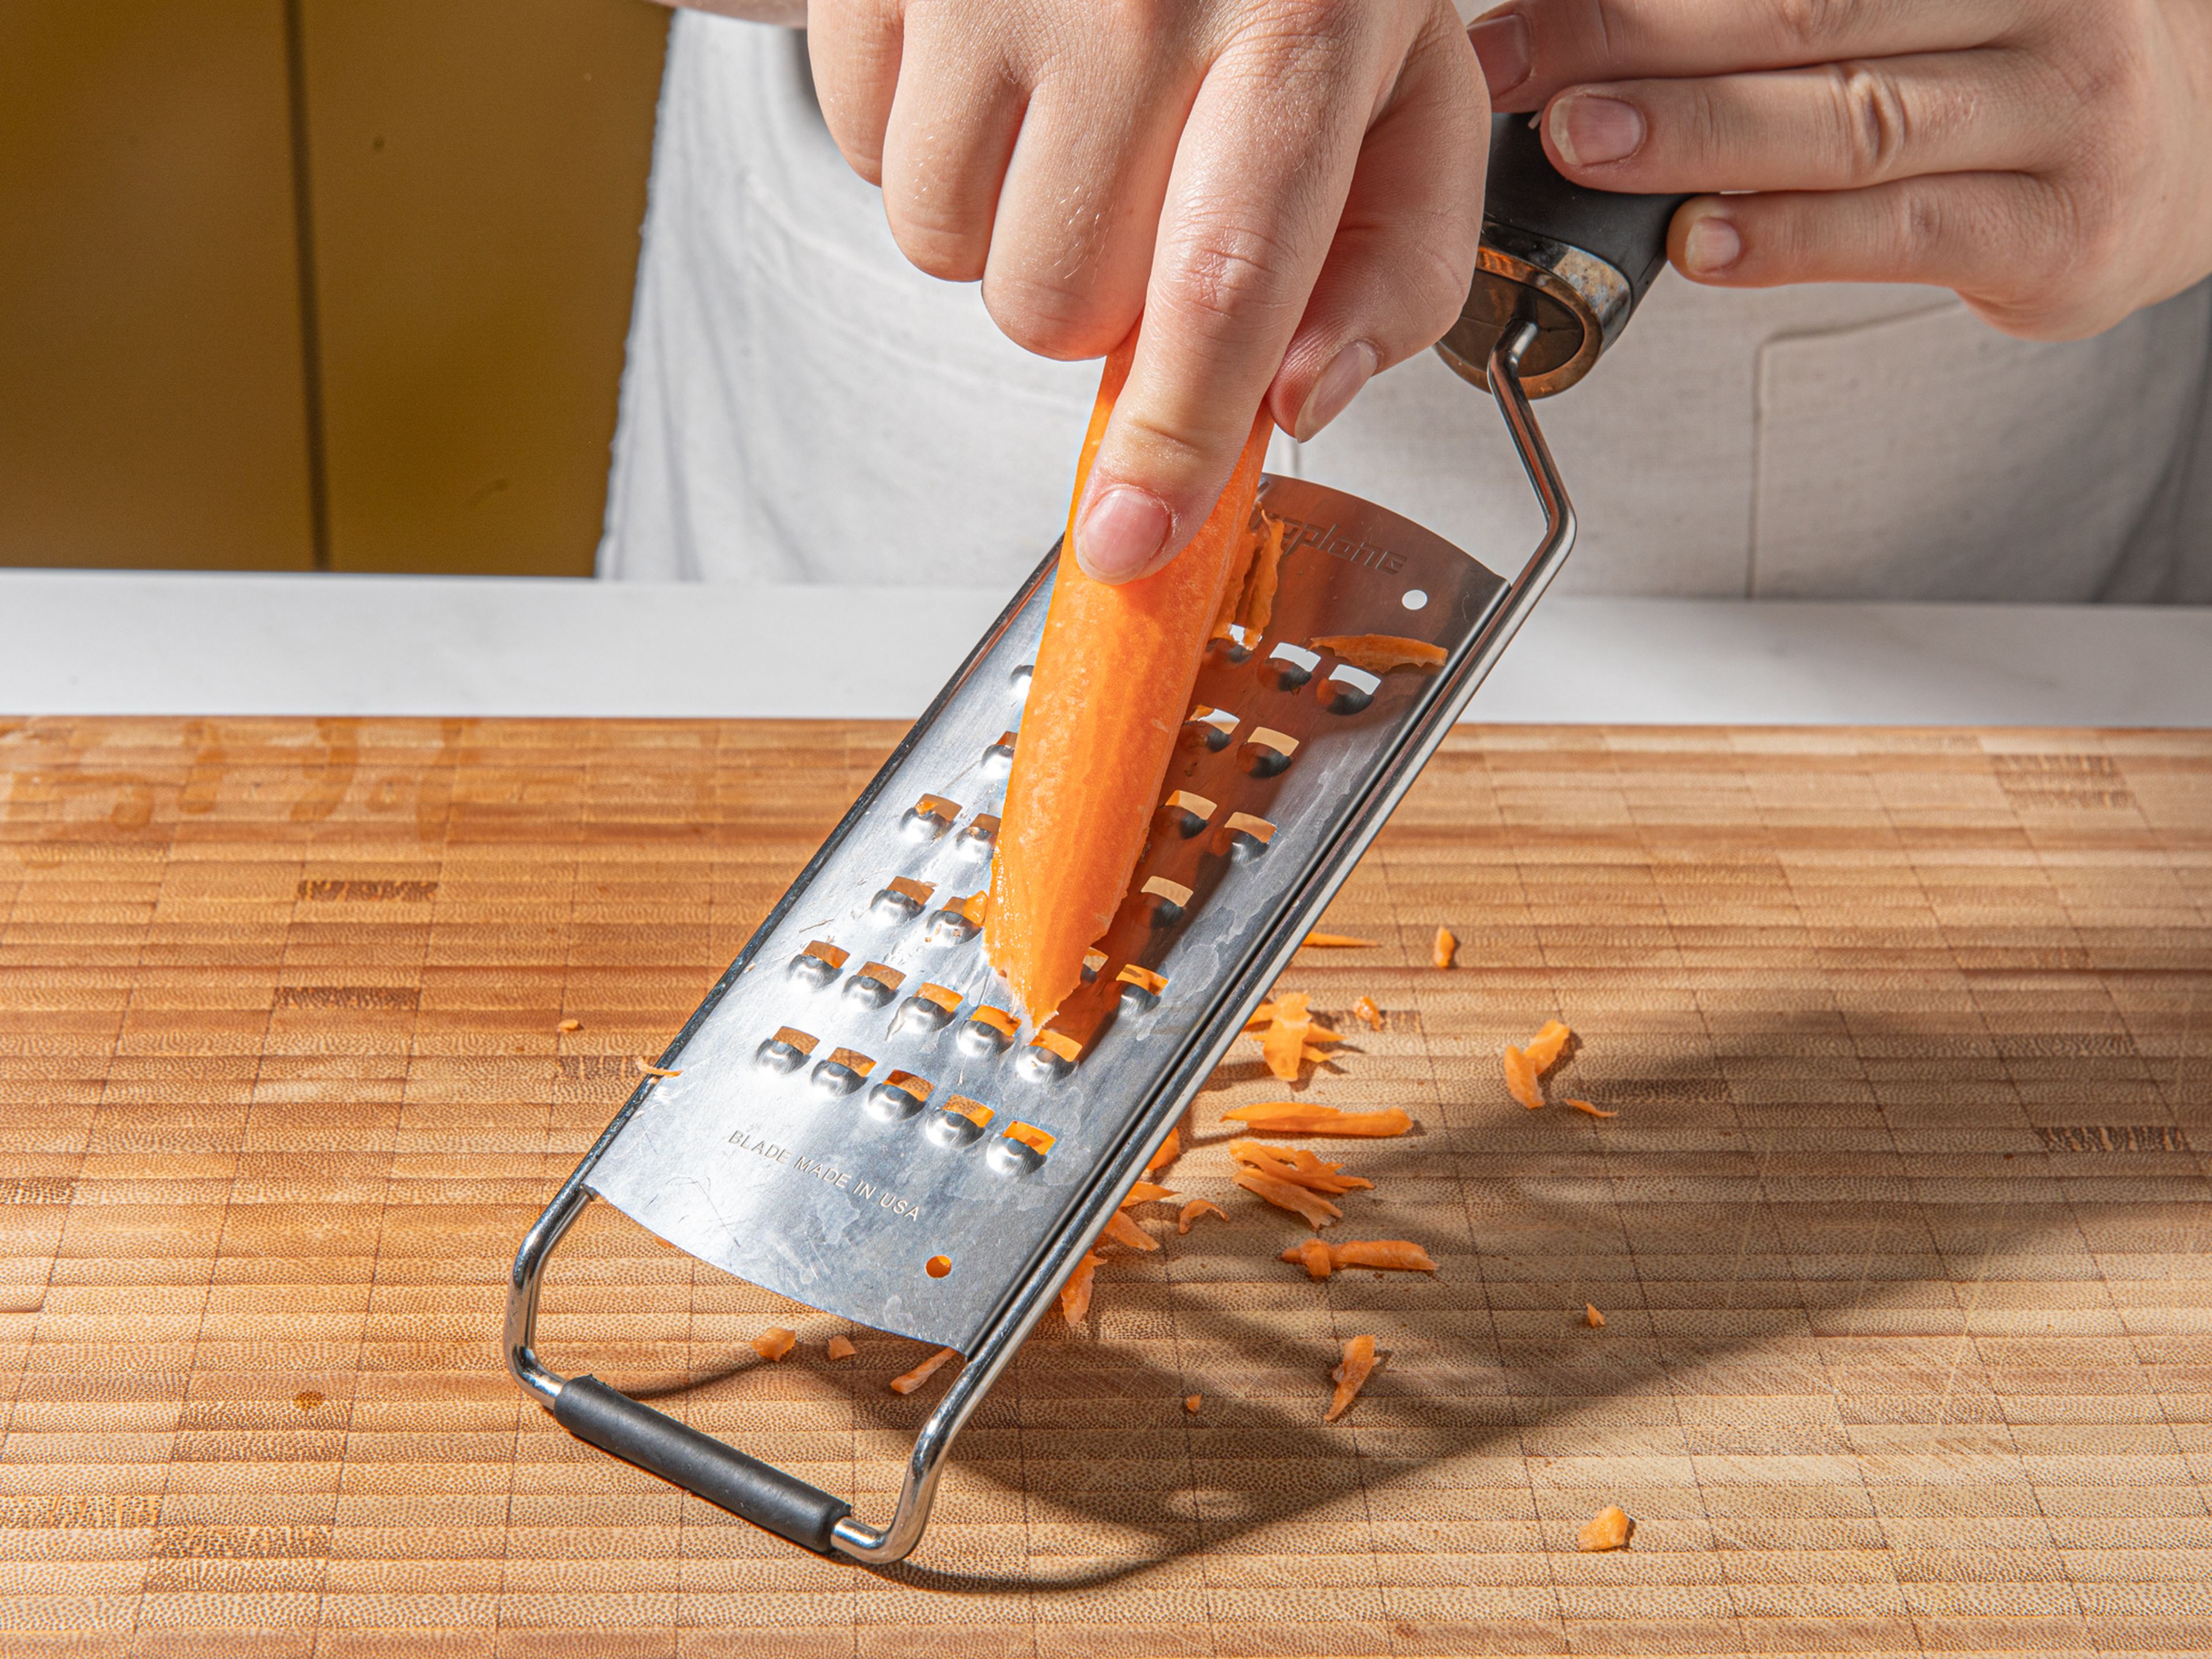 Das Ende des Salatkopfes abschneiden und die Blätter abtrennen. Die Karotte schälen, raspeln und in eine Schüssel geben. Mit Salz würzen und beiseite stellen. Gurken schräg in dünne Scheiben schneiden, sodass große, längliche Scheiben entstehen. Paprika vom Kerngehäuse befreien, entkernen und in dünne Scheiben schneiden. Tomate in dicke Scheiben schneiden. Minze und Petersilie abzupfen und grob hacken. Grüne Oliven ebenfalls hacken.